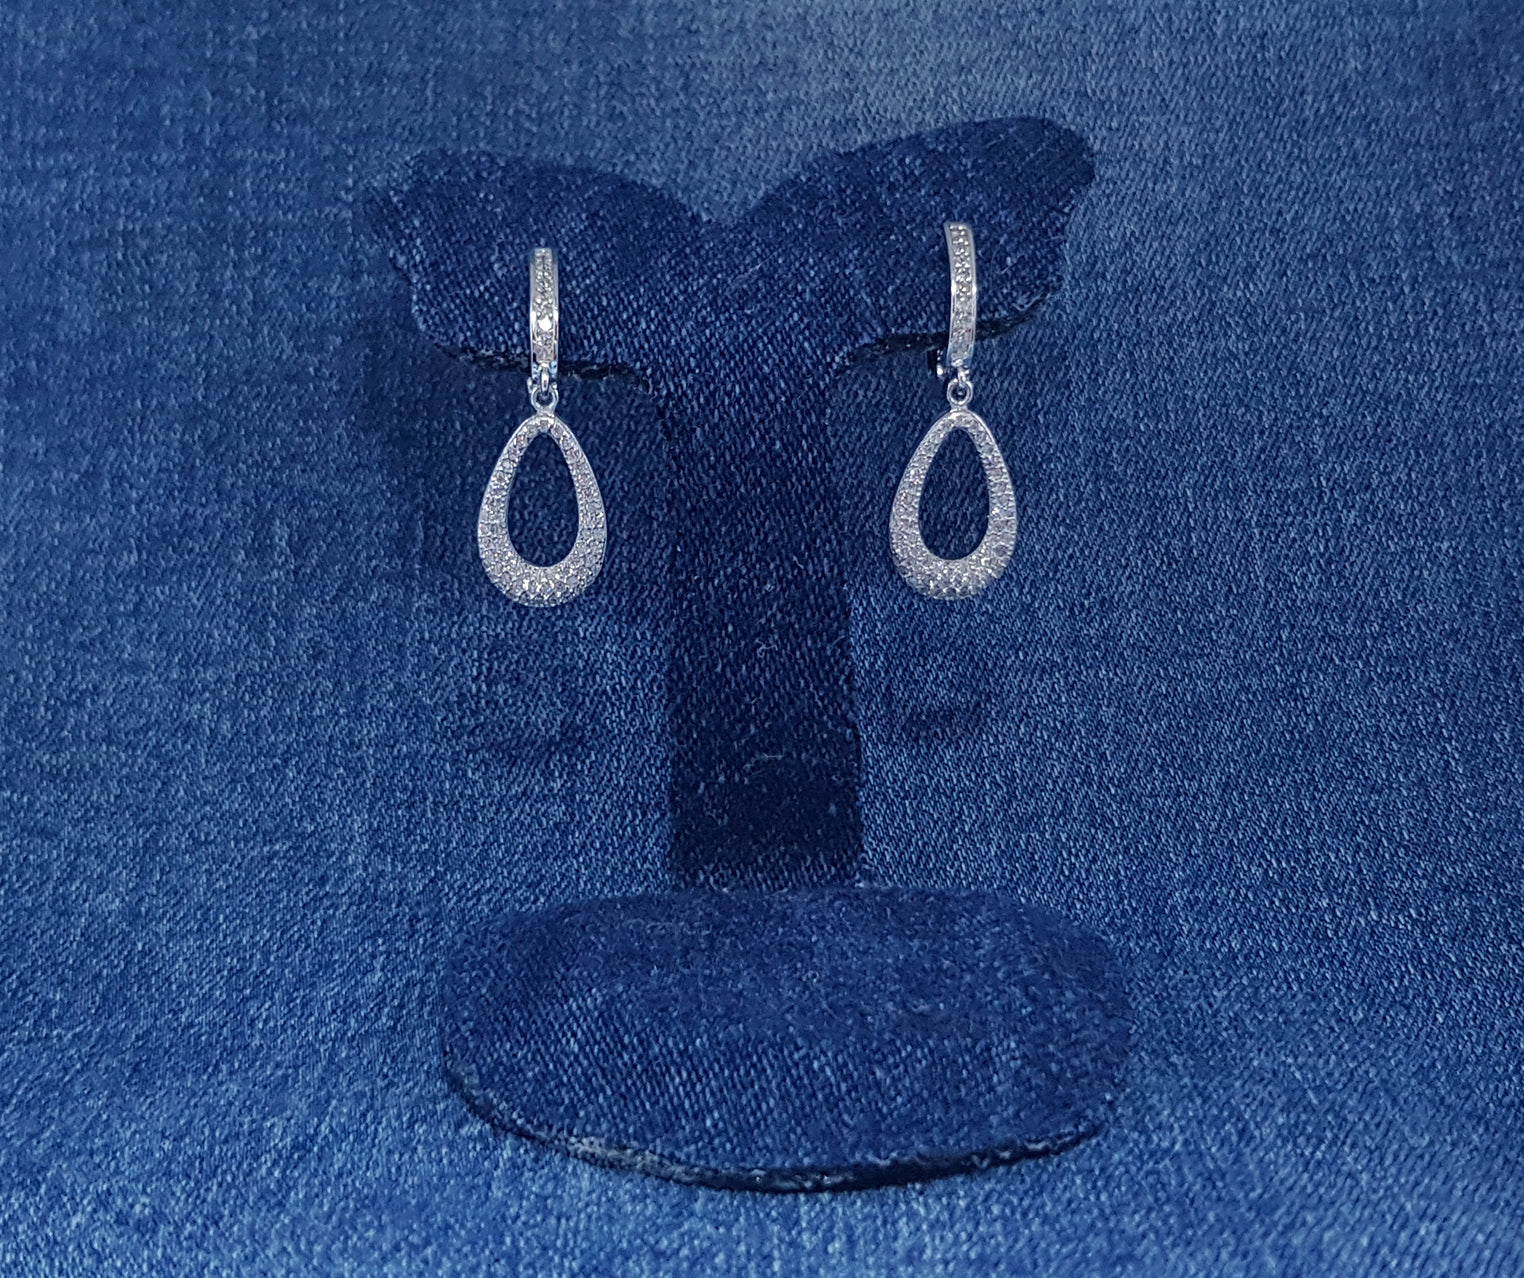 Sterling Silver Drop Earrings - Silver Image Jewellery